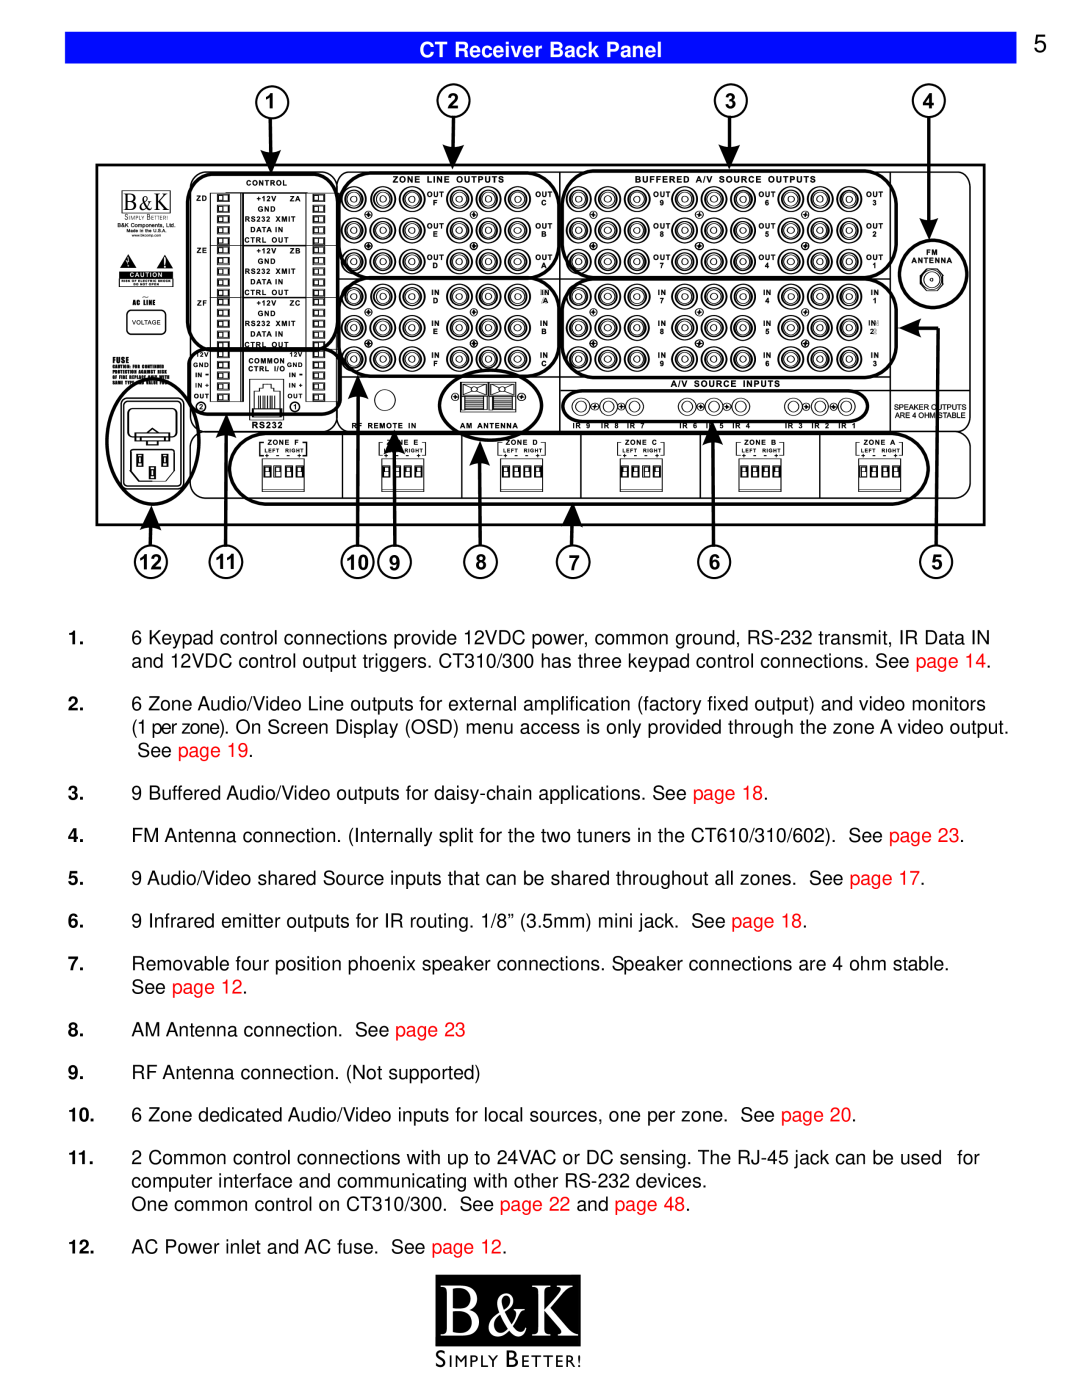 B&K CT300, CT600, CT602, CT310, CT610 user manual B & K, CT Receiver Back Panel 